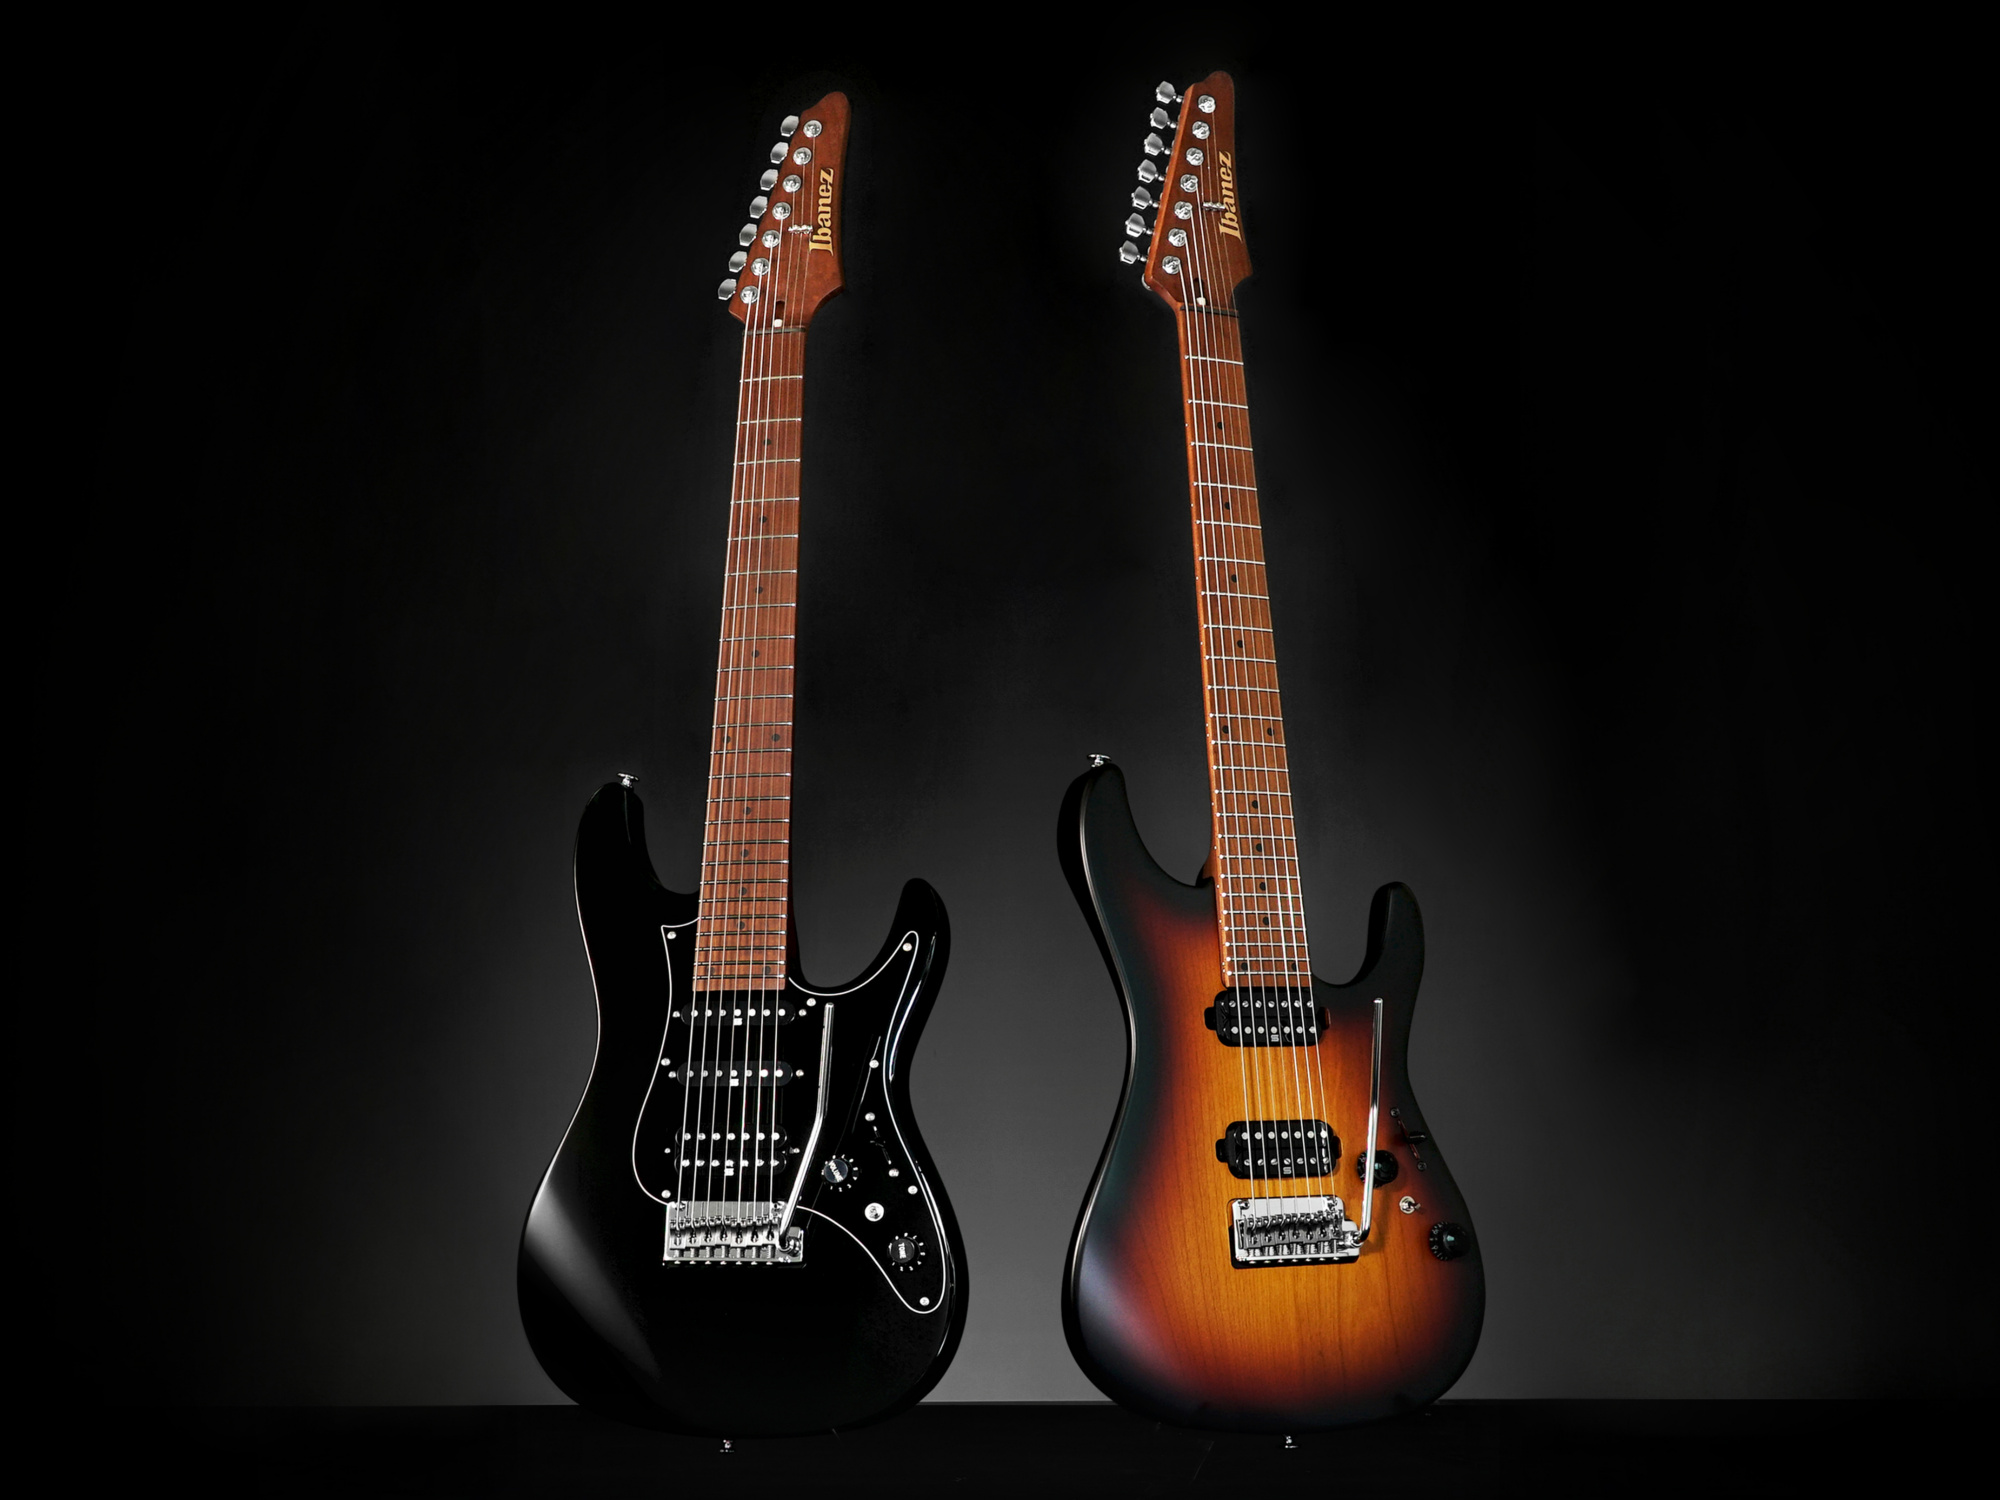 AZシリーズでラインナップする7弦ギターの新世代モデル